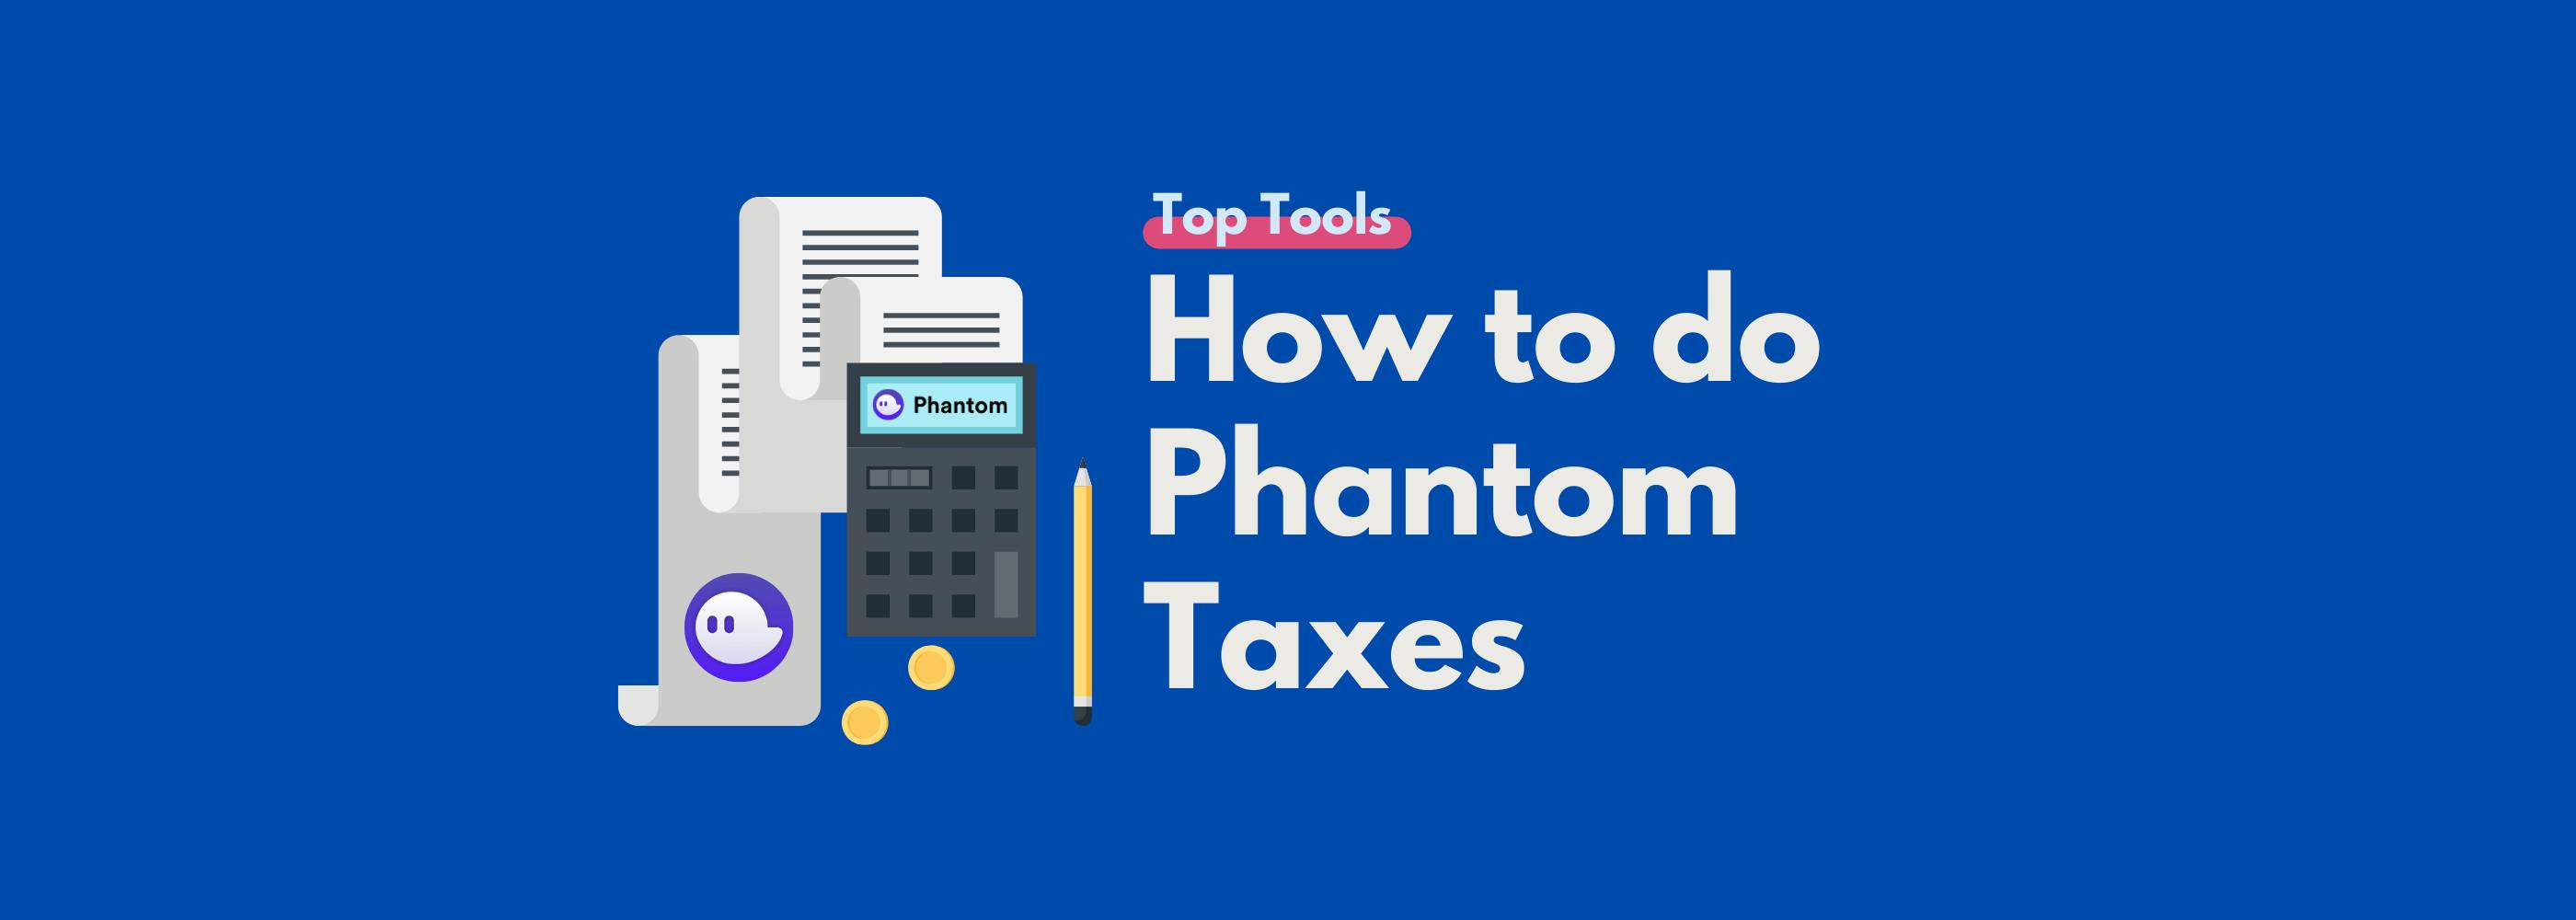 How to do Phantom Taxes